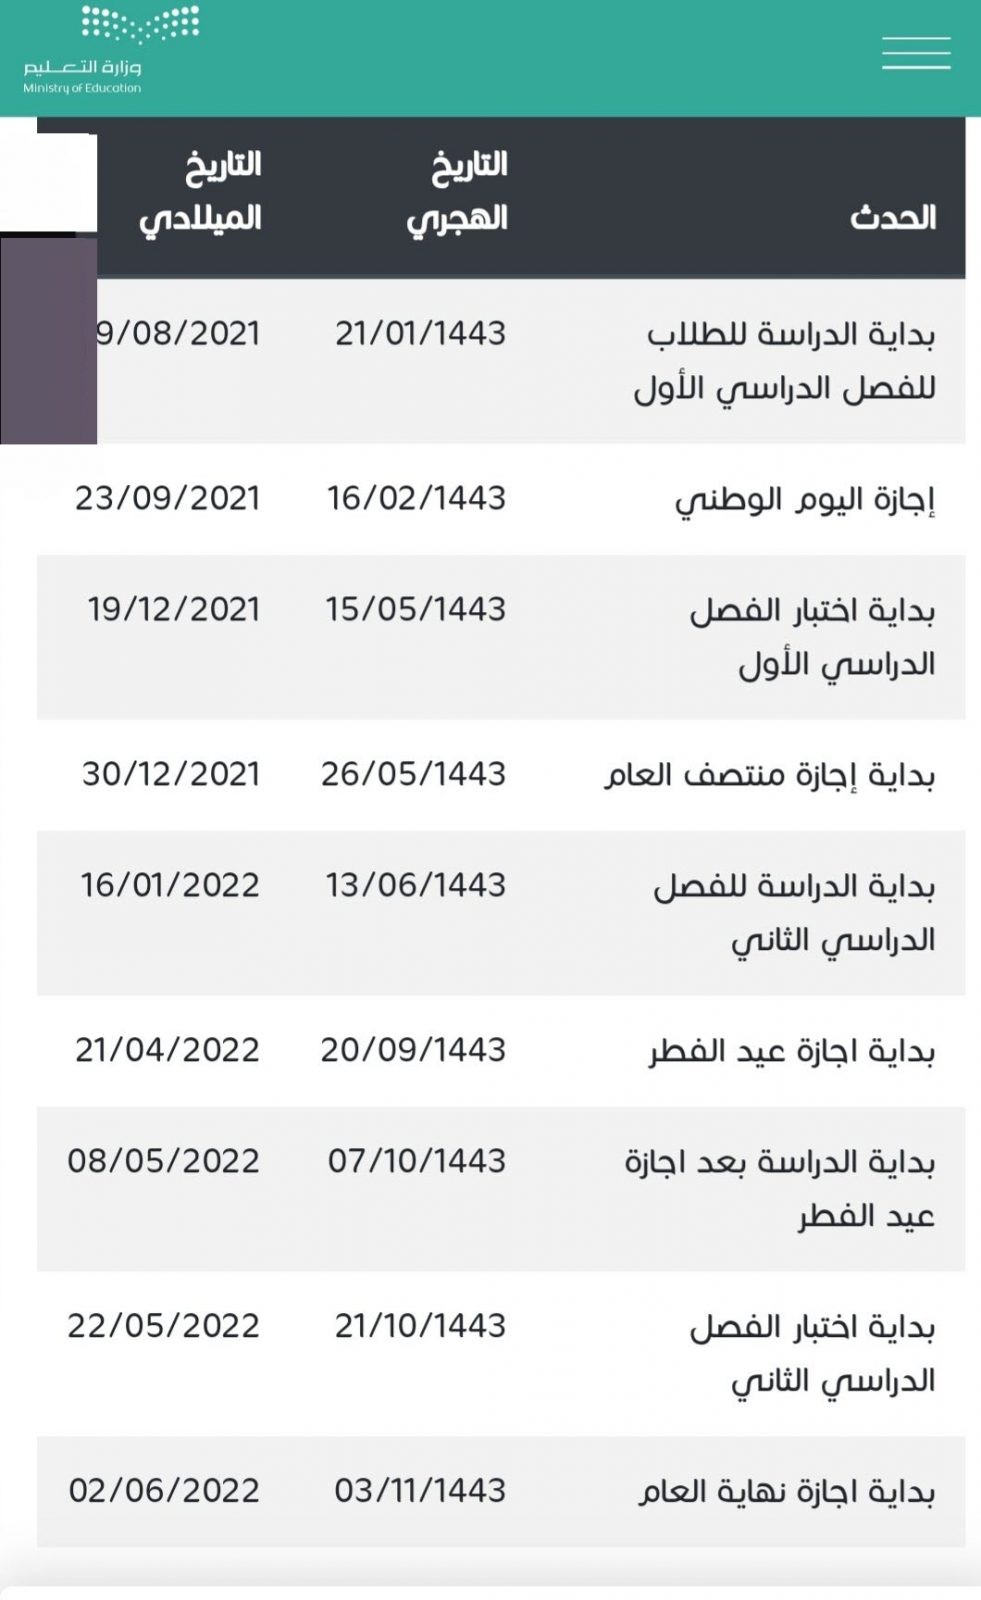 التقويم الدراسي 1443 في السعودية والاجازات الرسمية في العام الجديد